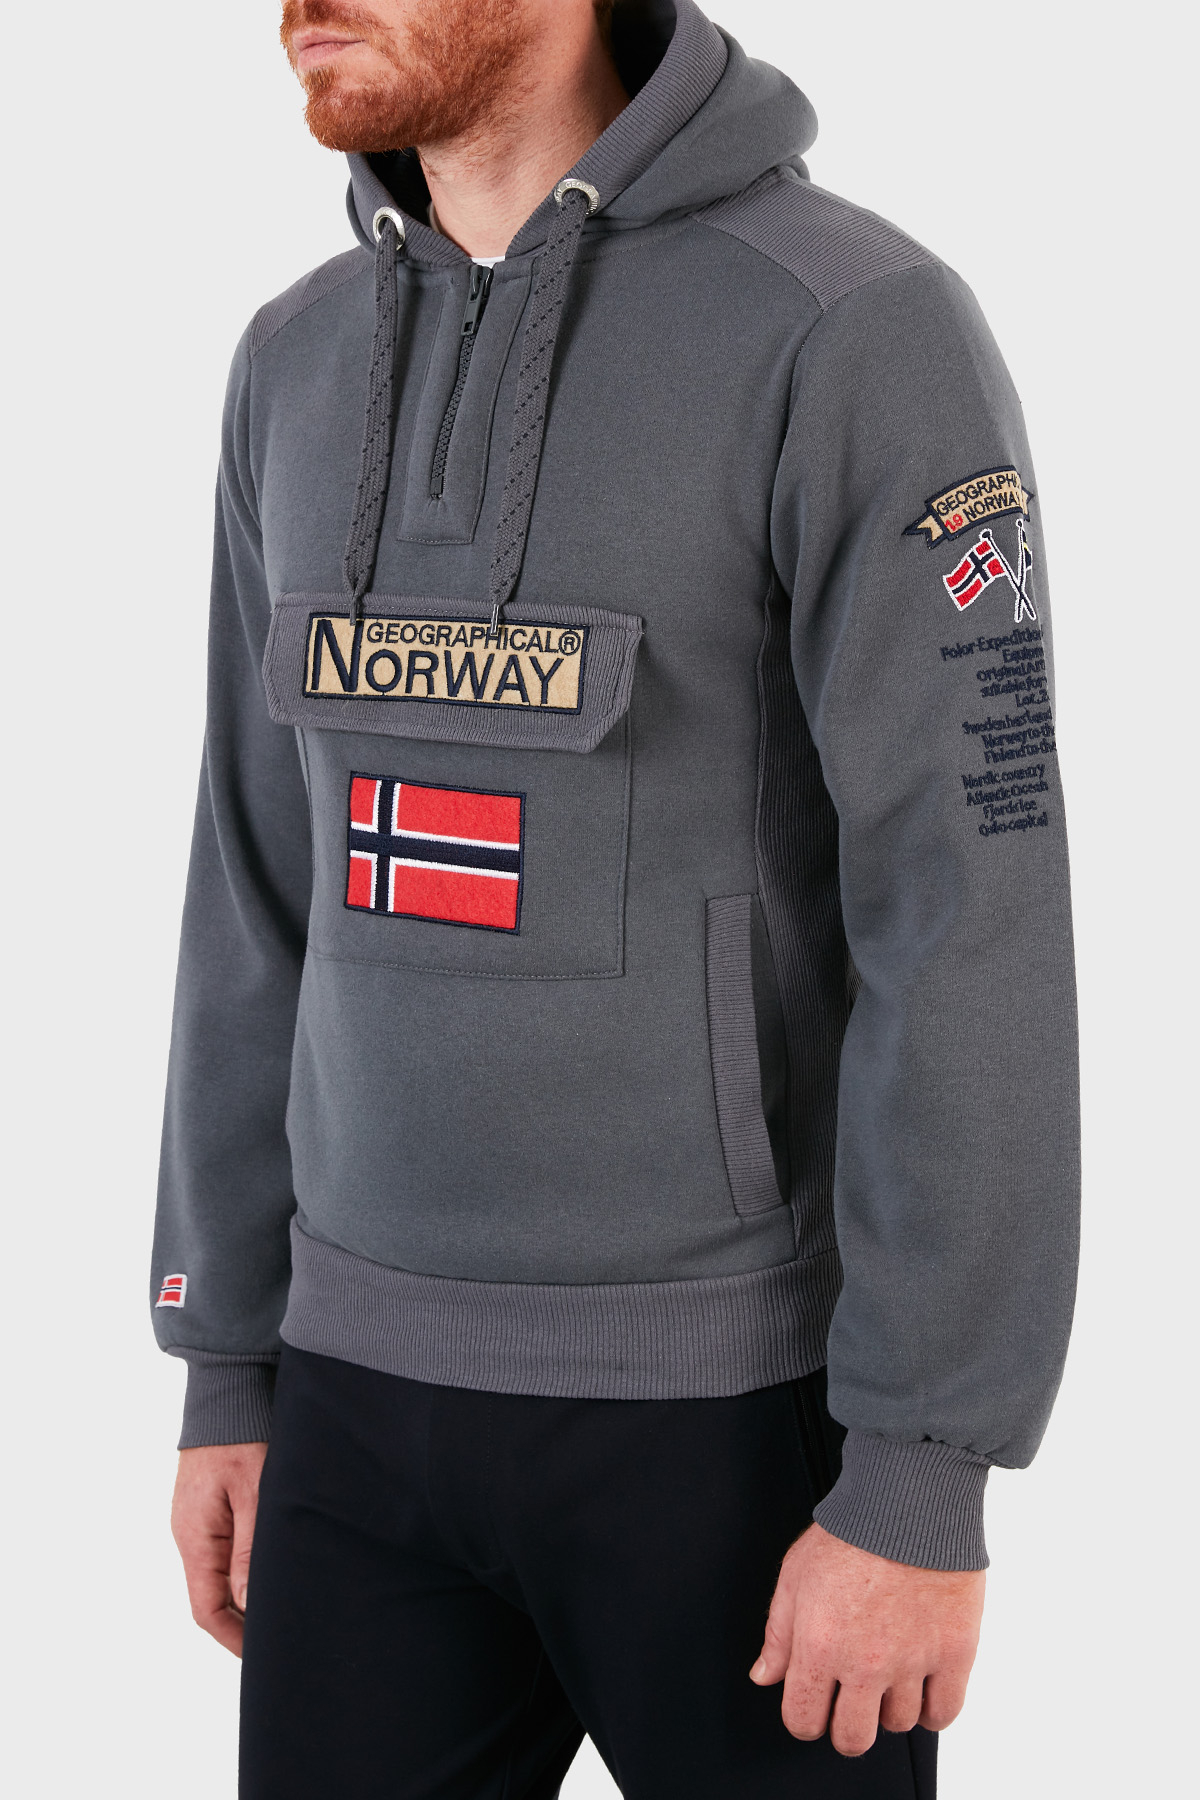 Norway Geographical Kapüşonlu Yarım Fermuarlı Outdoor Erkek Sweat GYMCLASSA100 KOYU GRİ